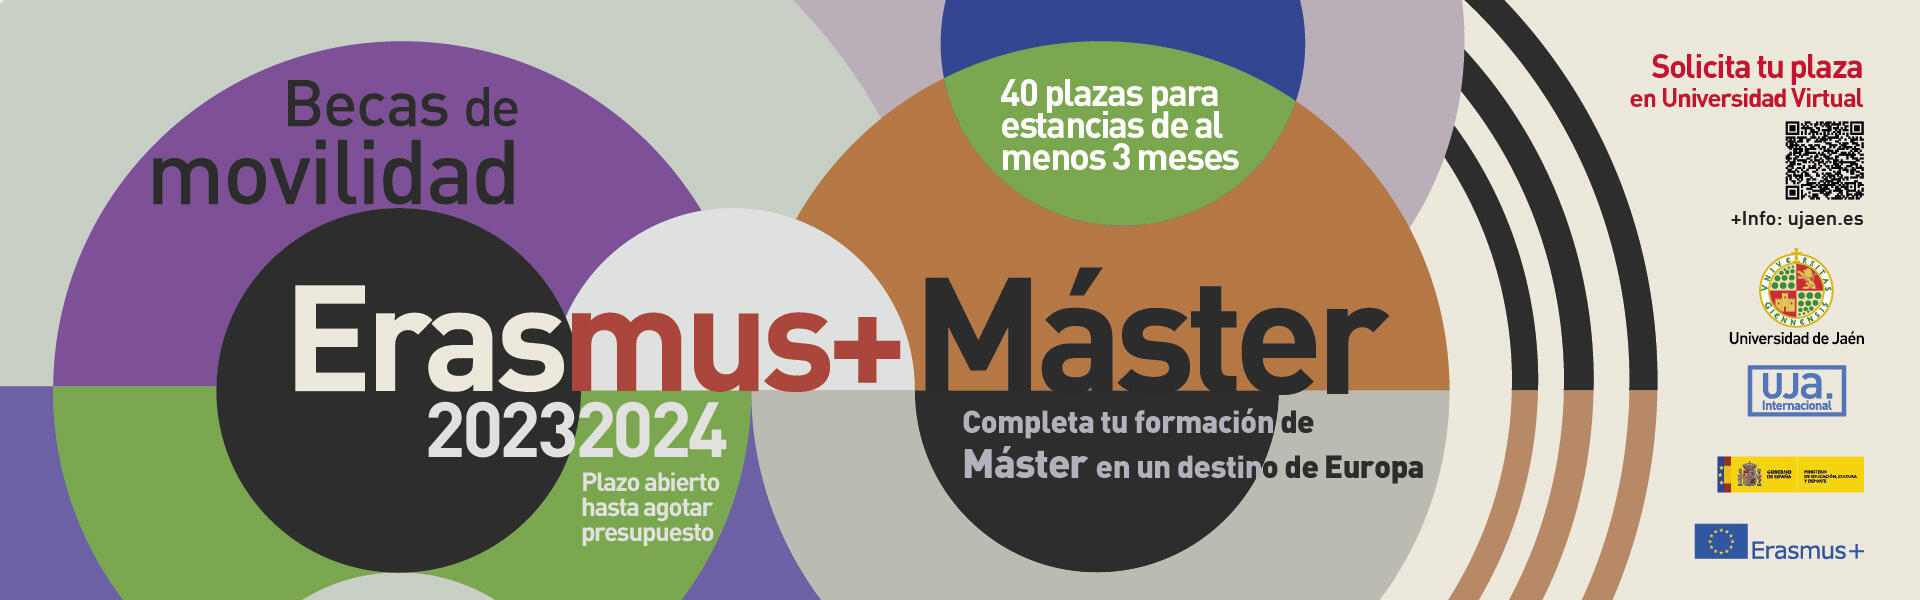 Erasmus+ Máster, curso 2023-2024